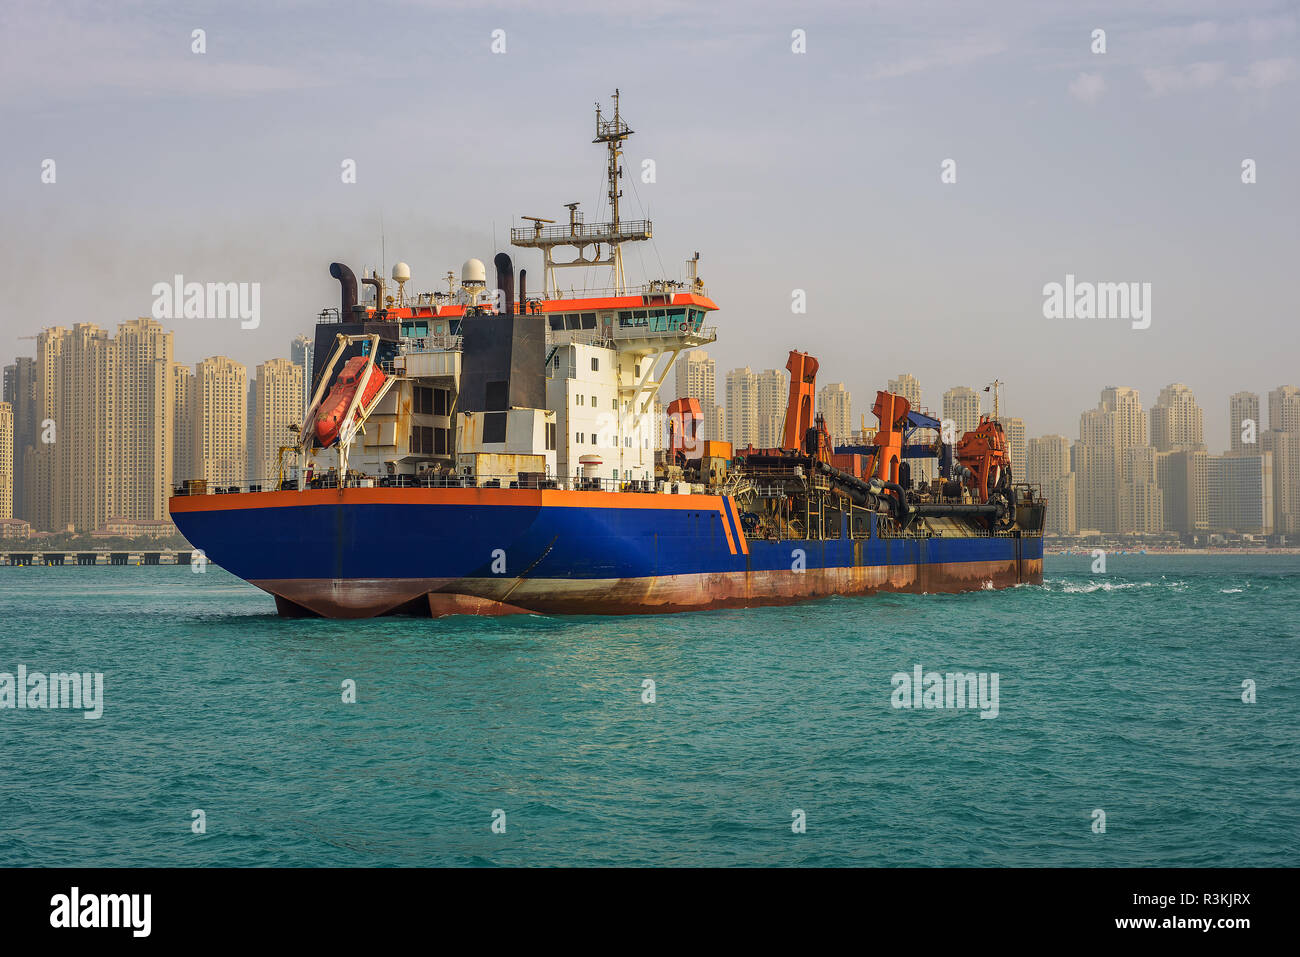 Oil tanker ship leaving the Dubai marina Stock Photo